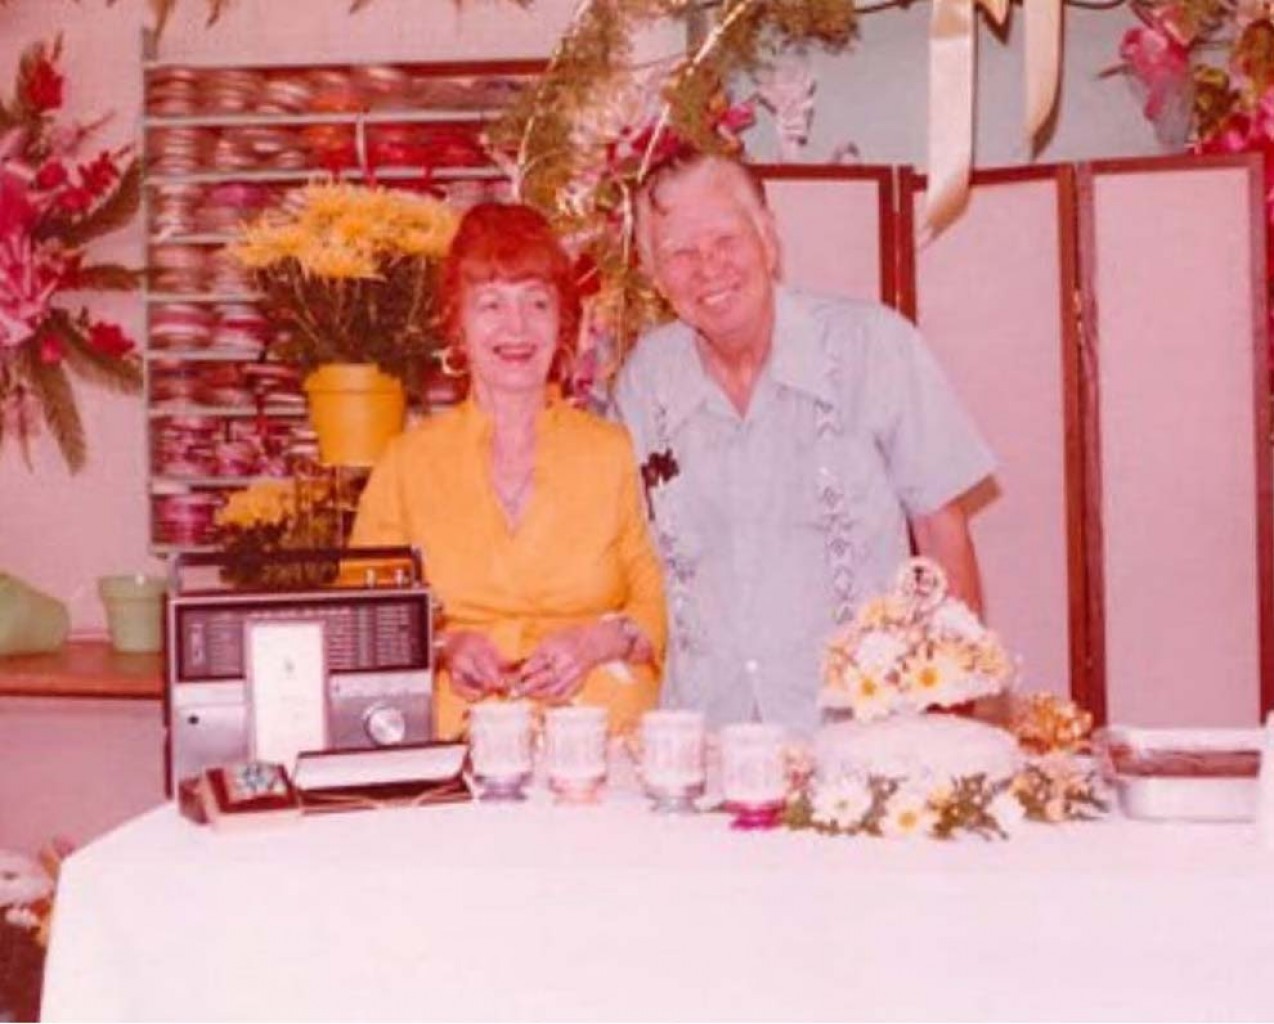 Capitol Hill Florist and Gifts  Tradición de Frescura, Confiable y Calidad desde 1932